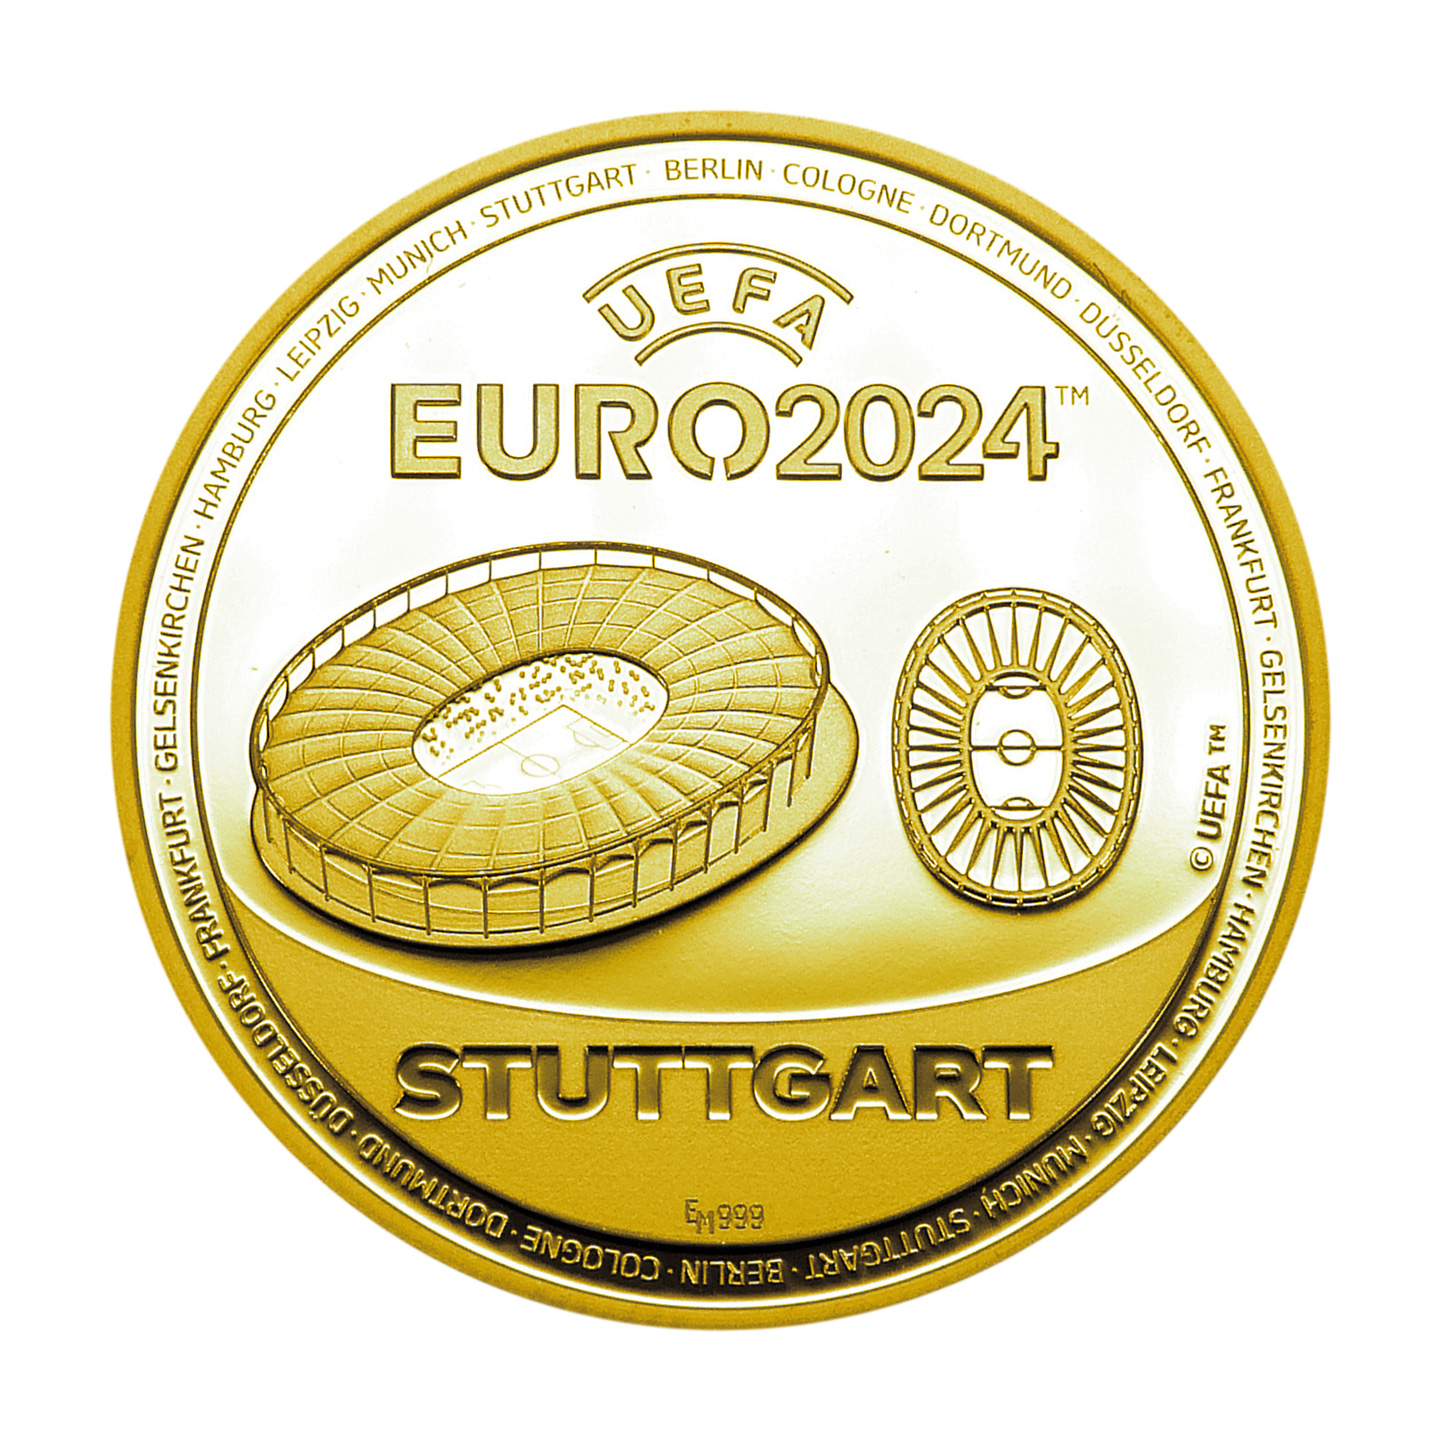 UEFA EURO 2024 Stuttgart - gold